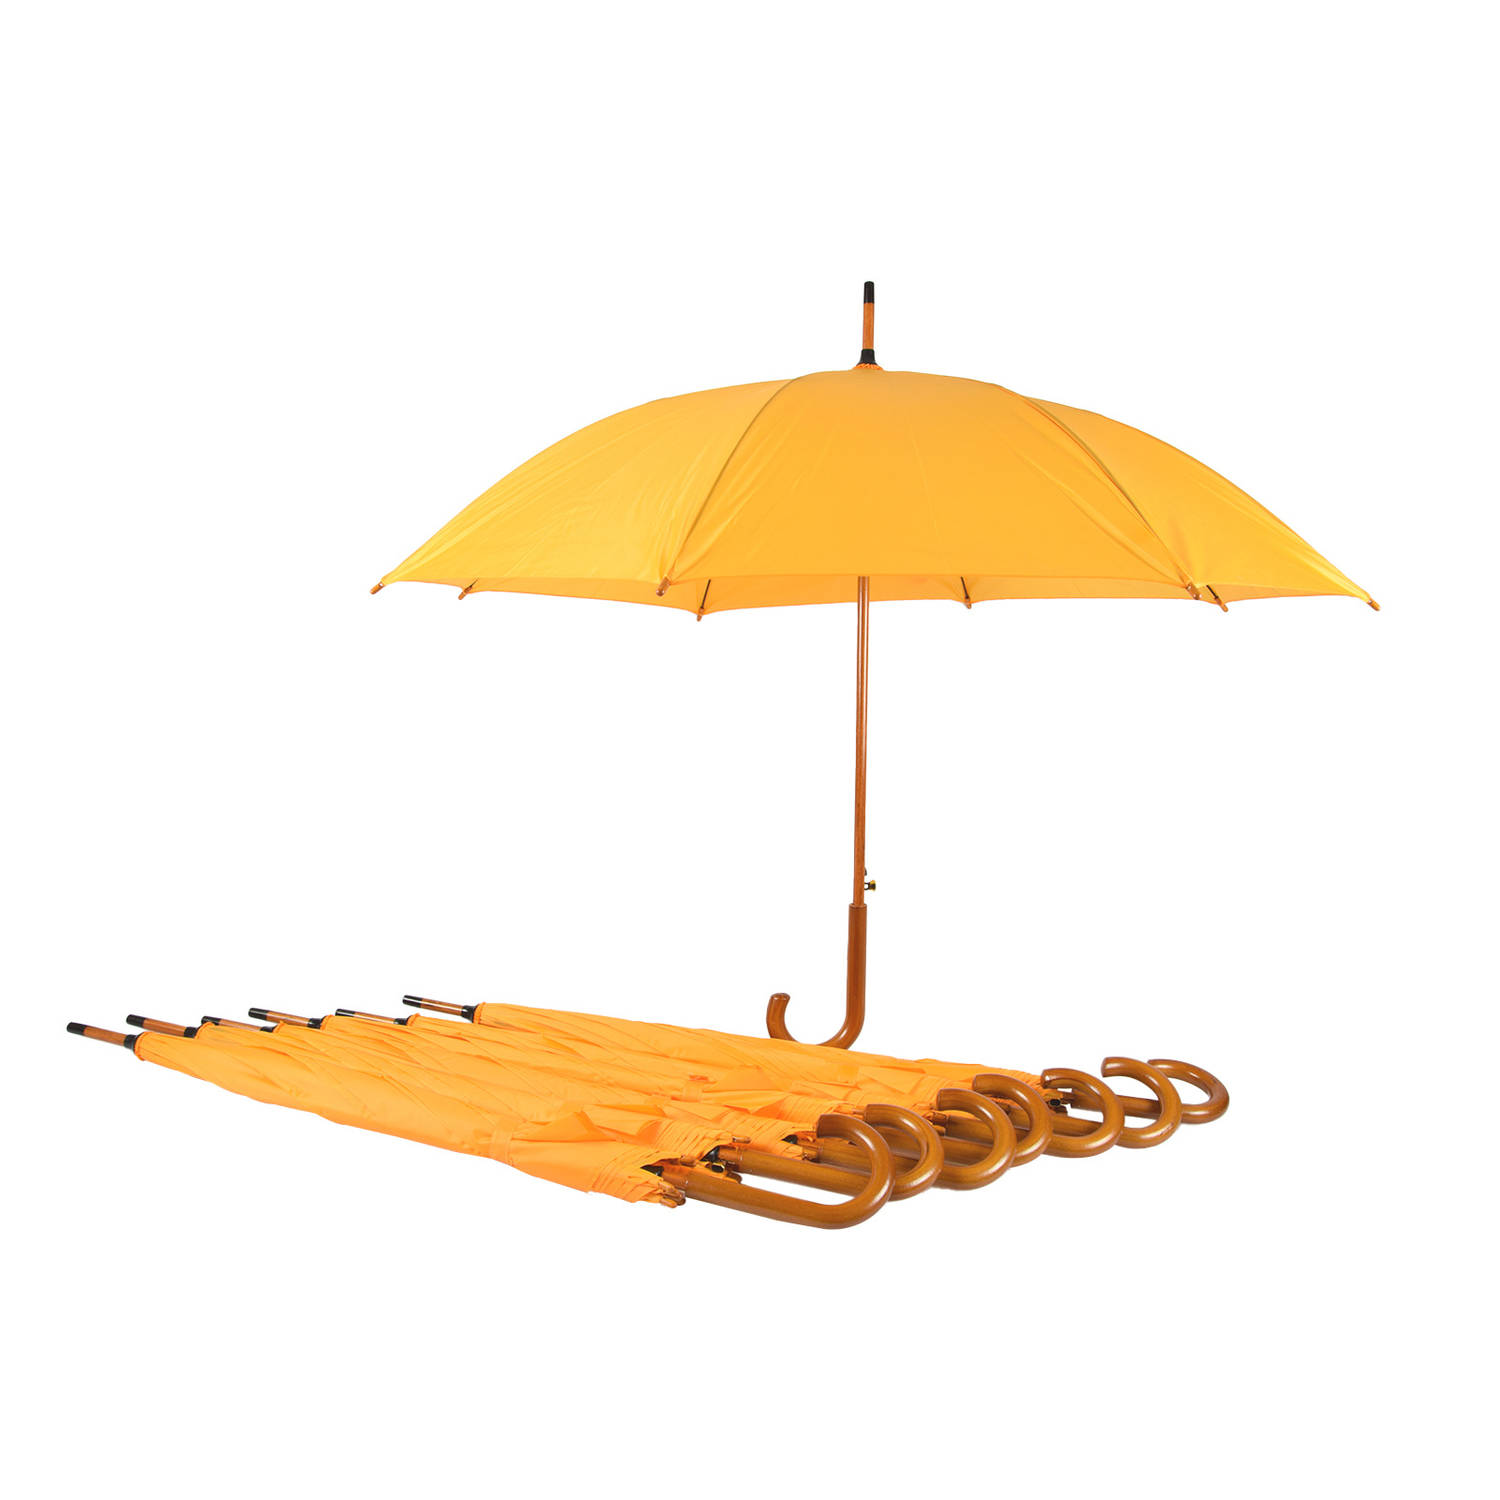 Set van 8 Gele Windproof Paraplu's (98 cm Diameter) - Perfect voor Winderig Weer| Unisex Paraplu Met Houten Handvat